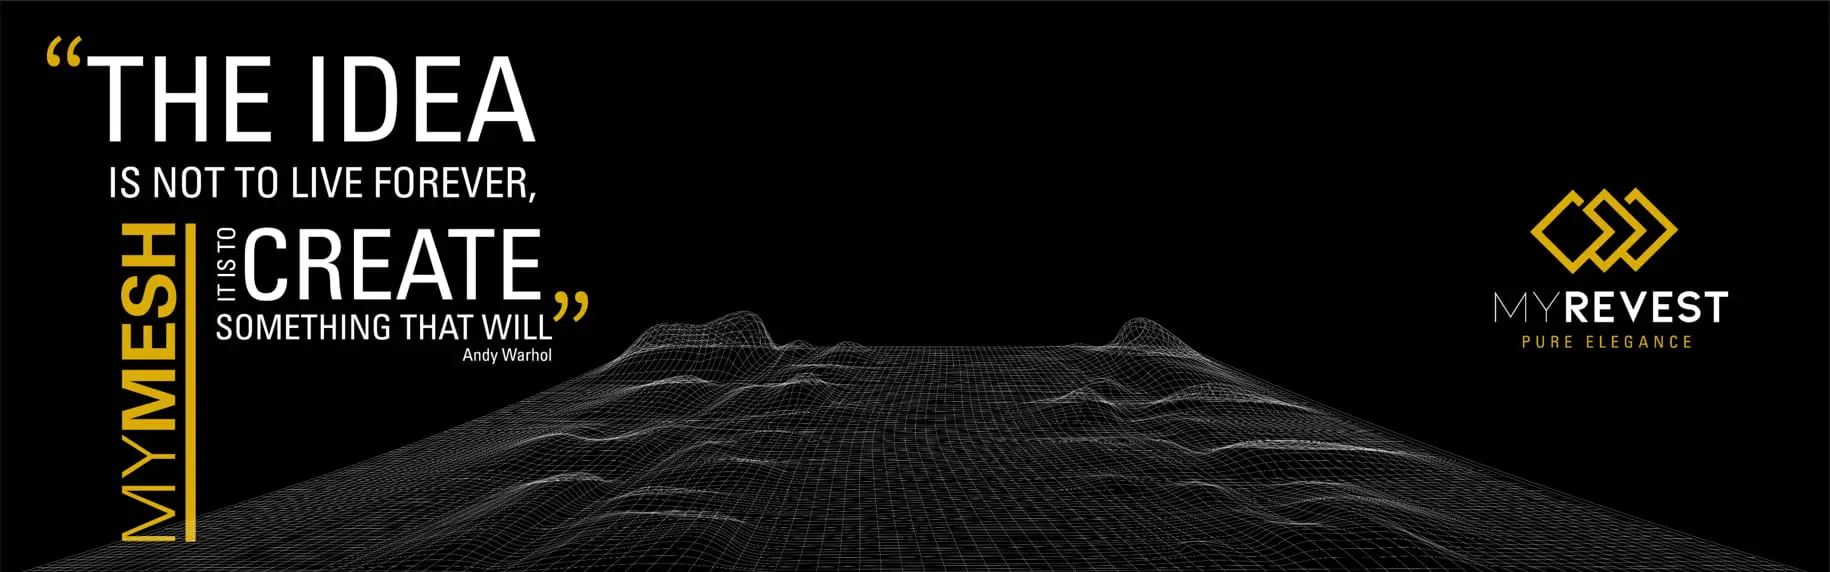 3D tervrajz egy kiterjedt üvegszálas hálóval, fekete háttérrel és a MyRevest logóval a tetején